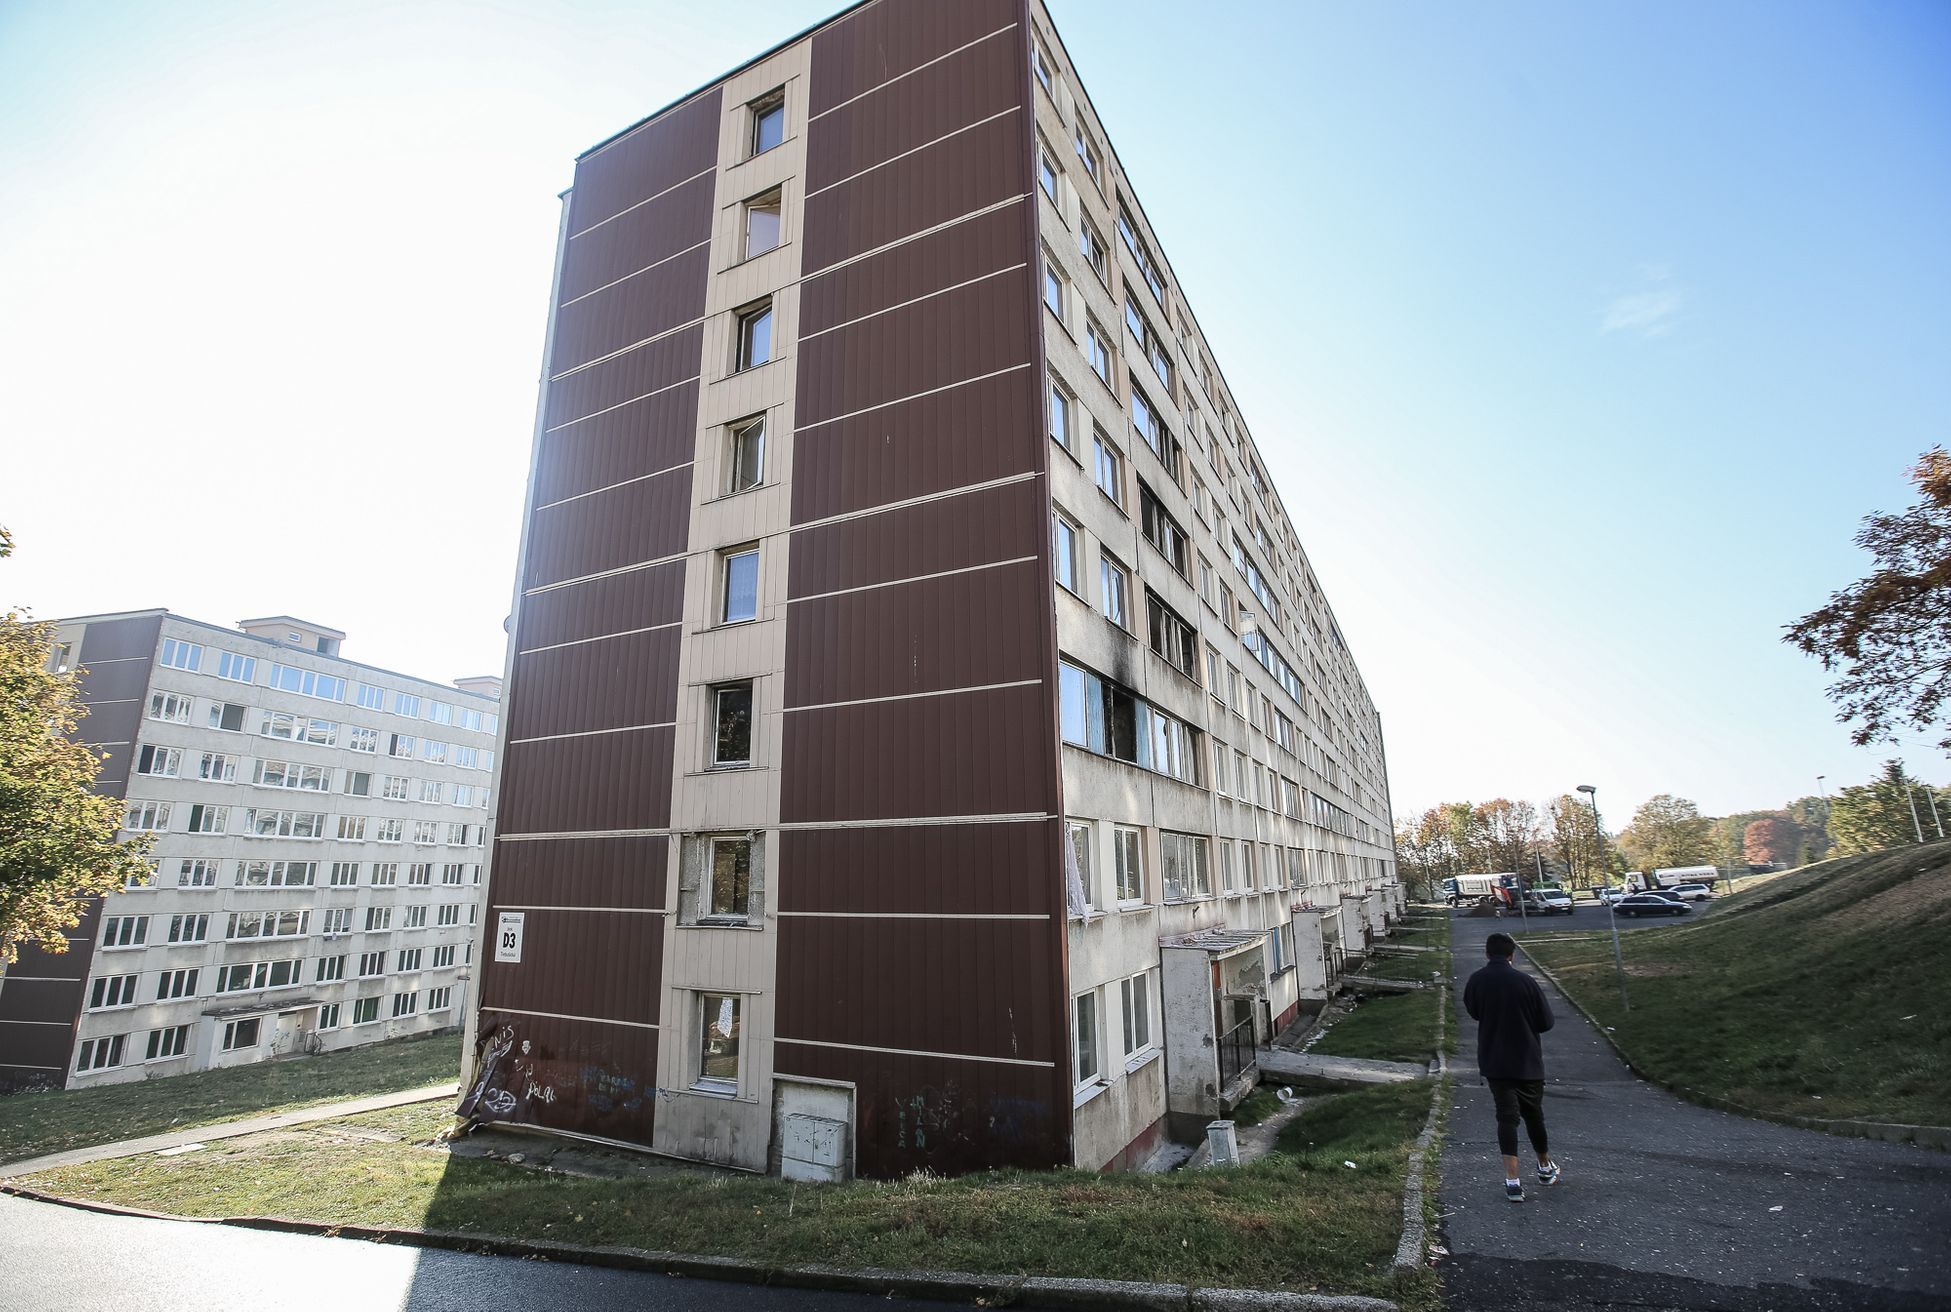 Sídliště Janov, Litvínov, 22.10.2018 - (polo)opuštěné a vybydlené domy, vytlučená okna